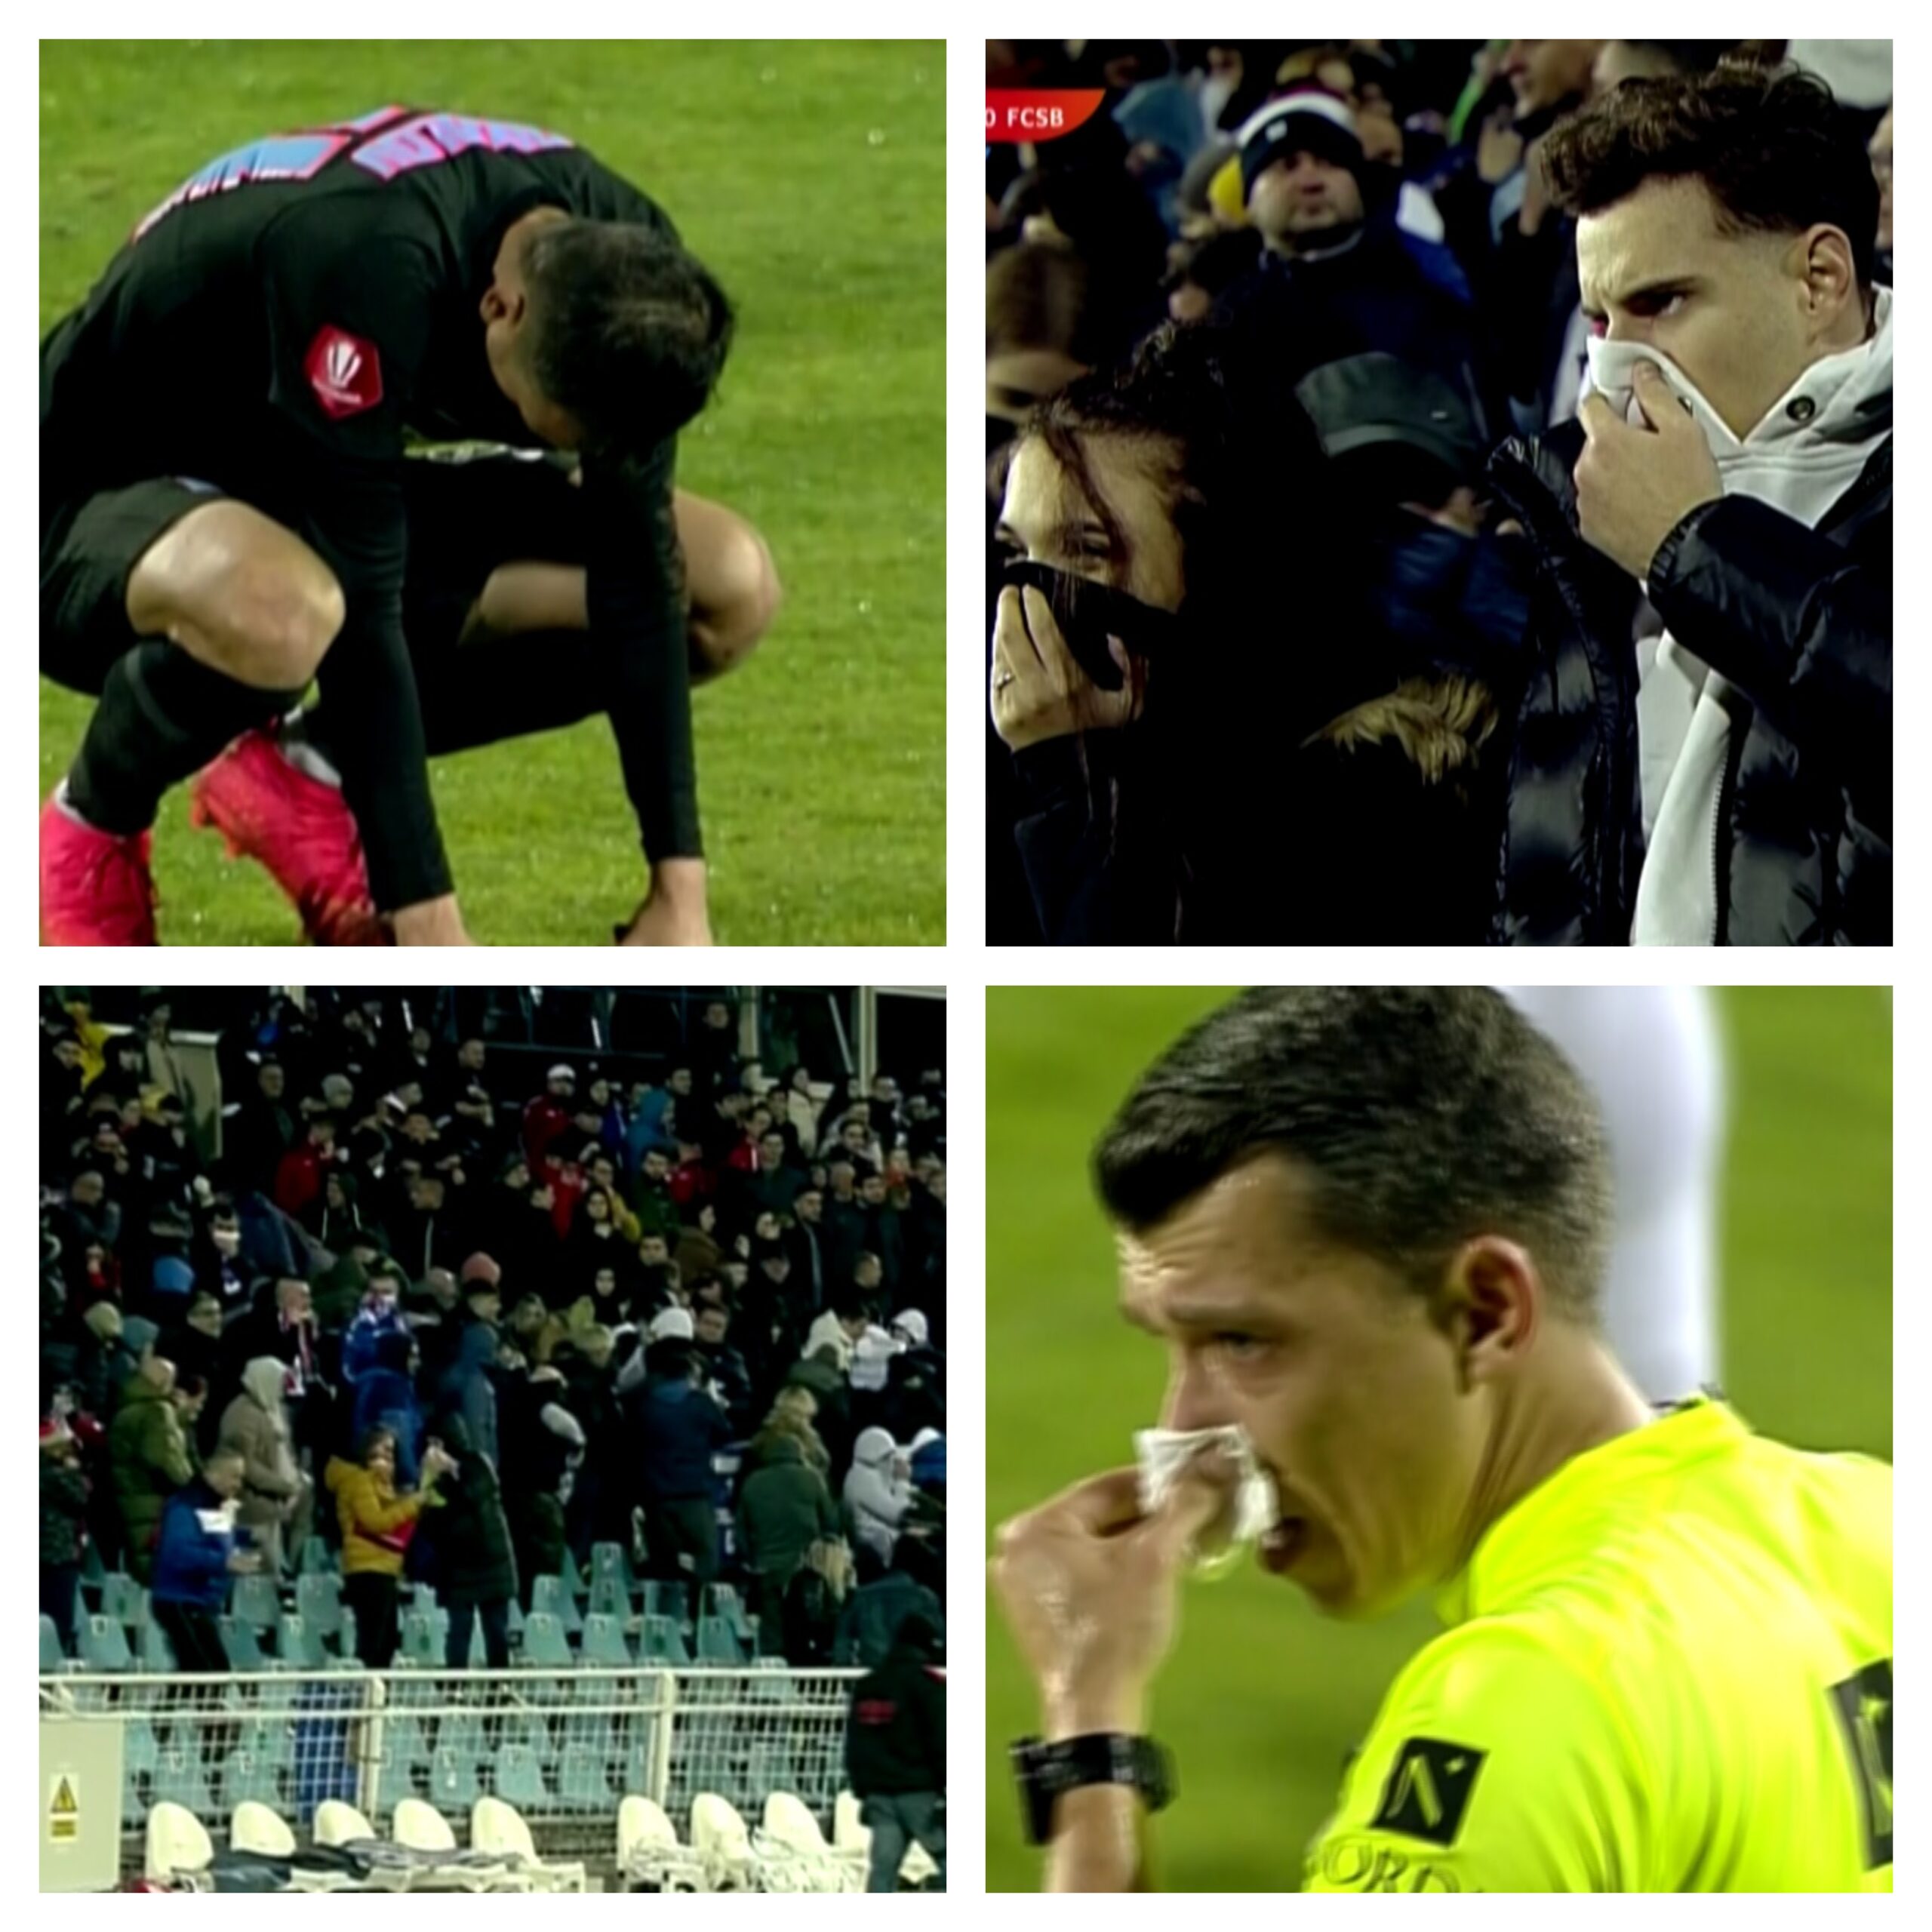 Momente incredibile în finalul meciului dintre Oţelul şi FCSB! Spectatorii şi jucătorii au avut probleme de respiraţie după ce au fost eliberate gaze lacrimogene din greşeală